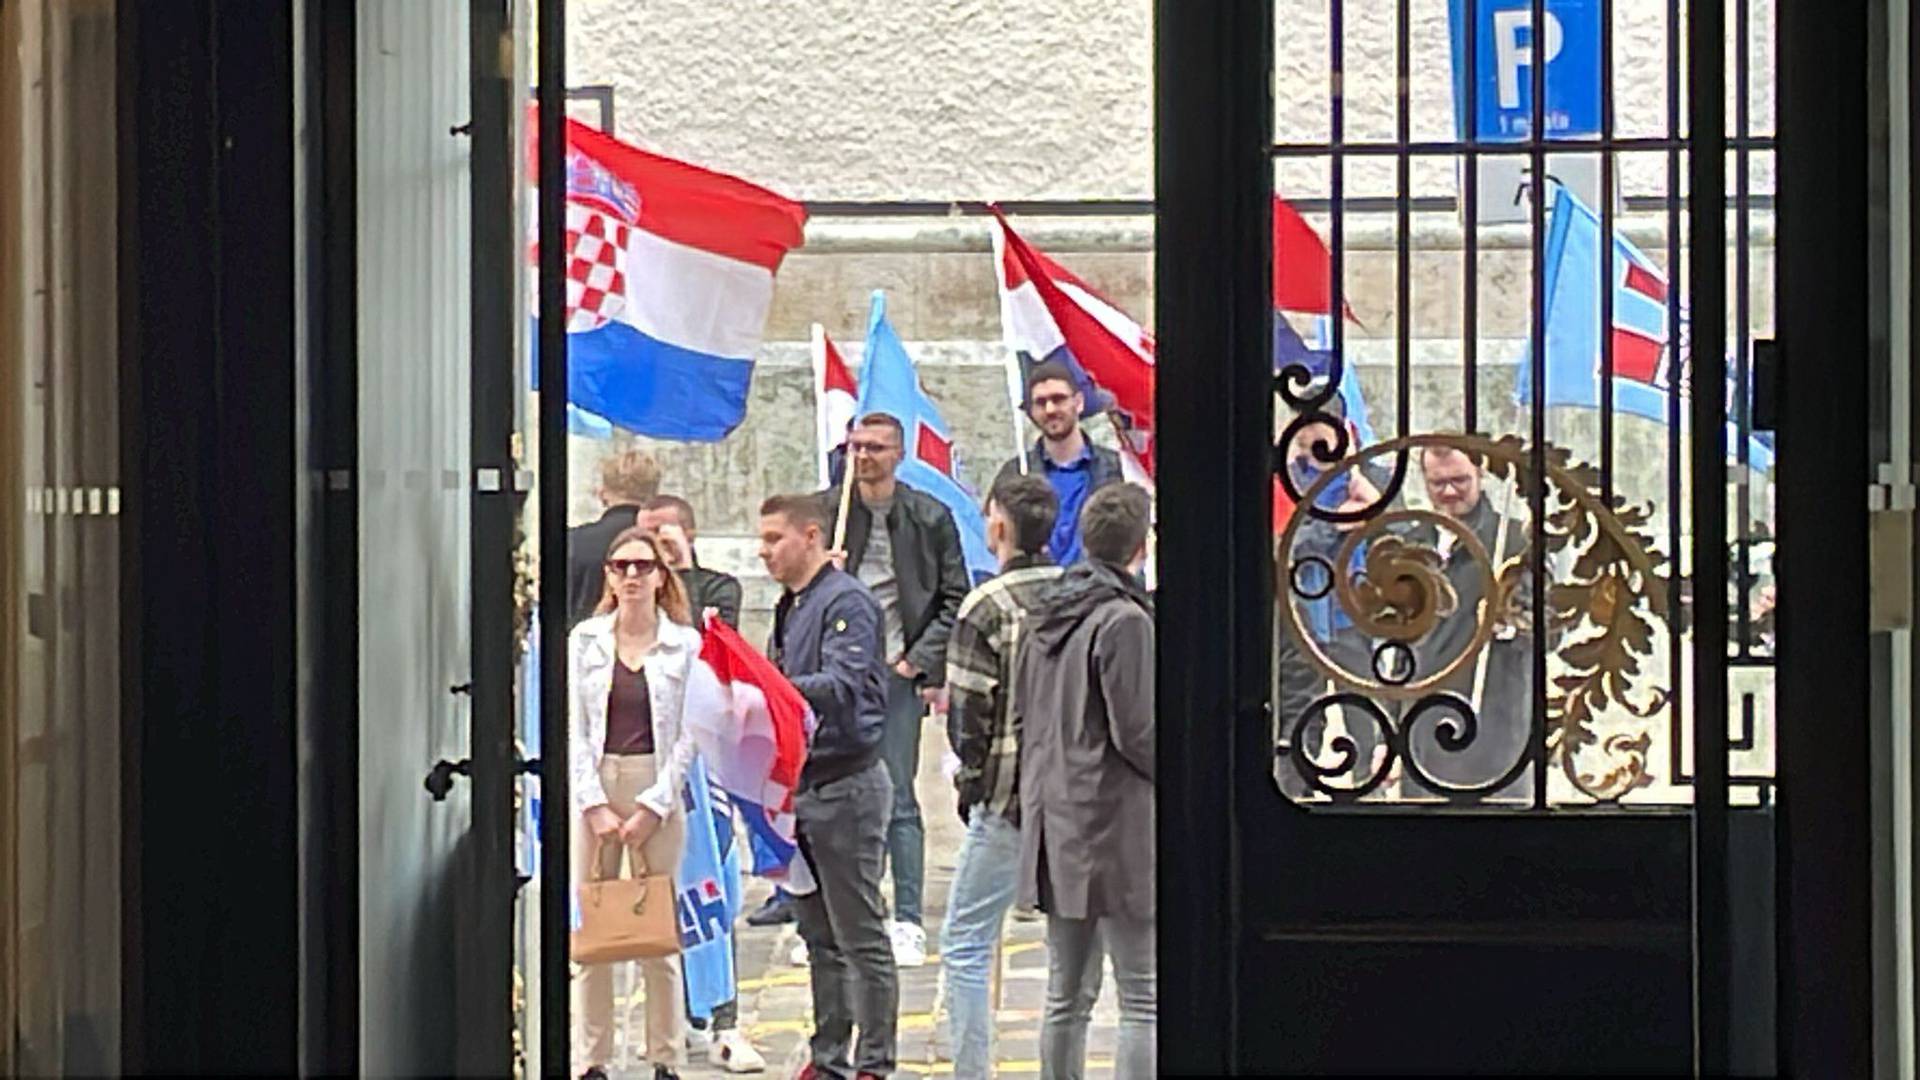 HDZ i partneri su predali liste, mladež HDZ-a ih je čekala ispred Sabora sa zastavama